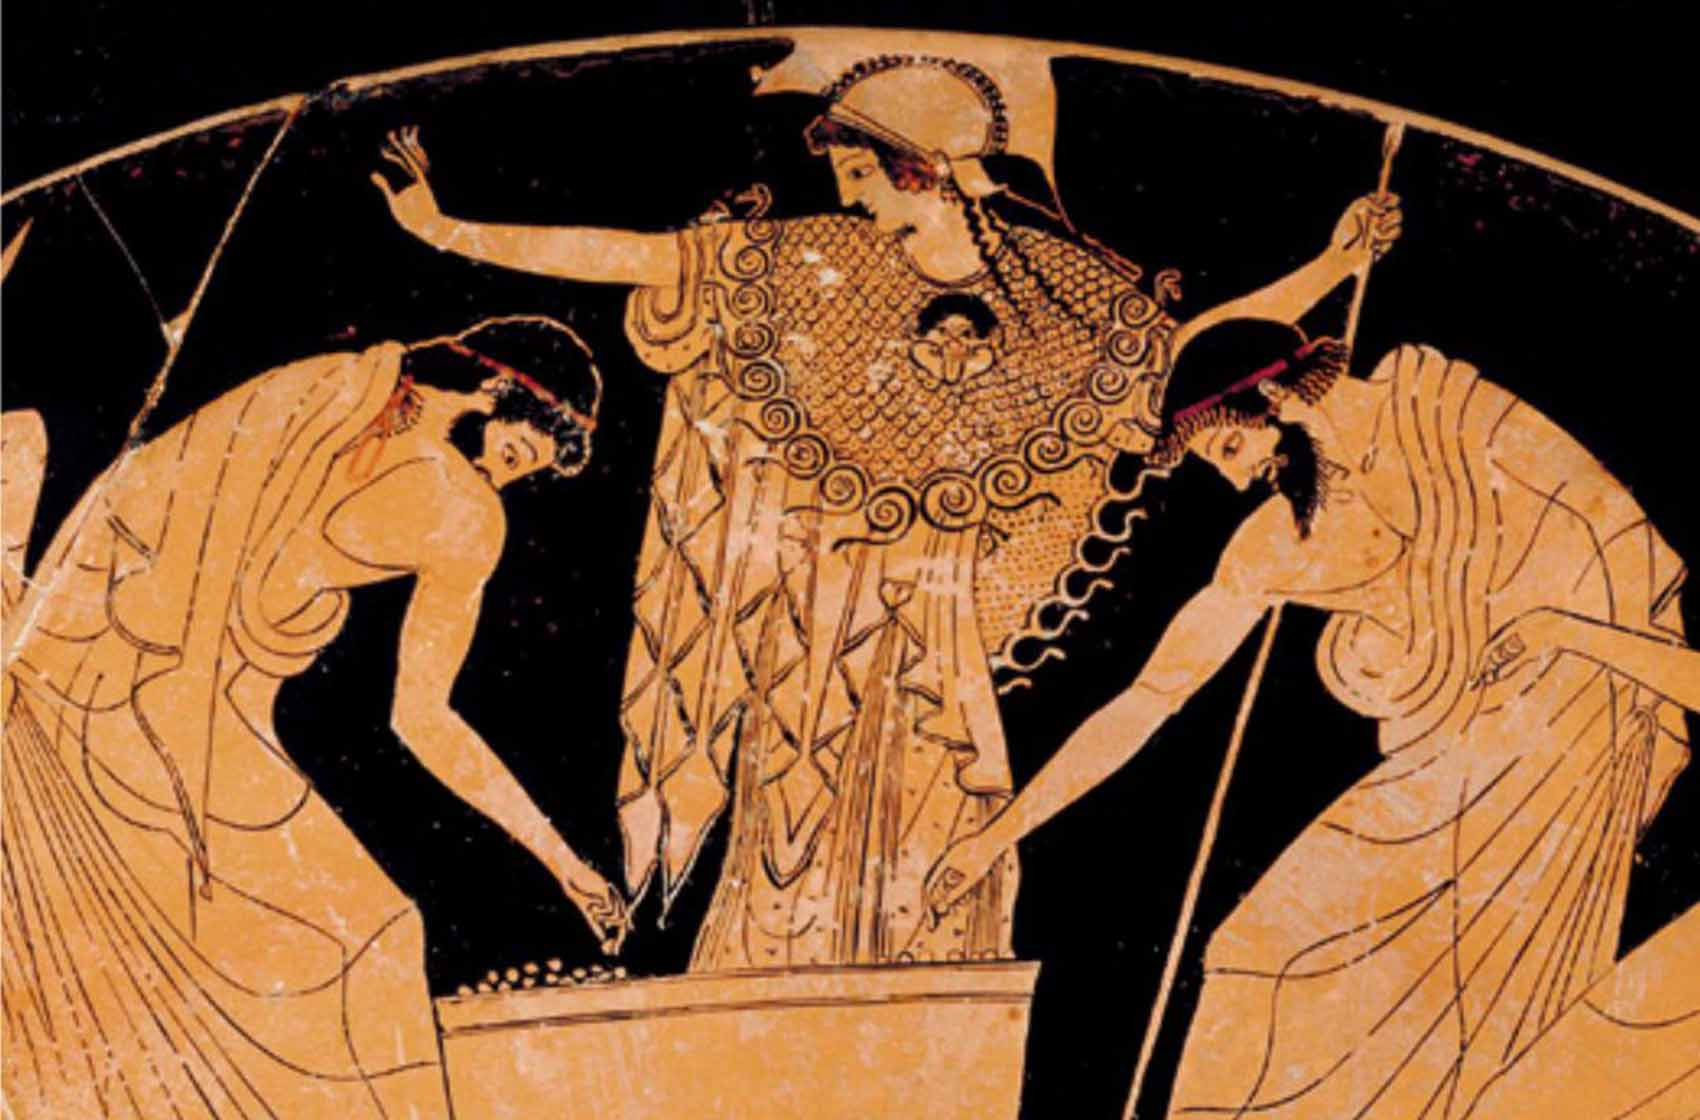 Scène de tirage au sort des dirigeants politiques d'Athènes. Coupe attique, vers 480 av. J.-C. Kunsthistorisches Museum, Vienne